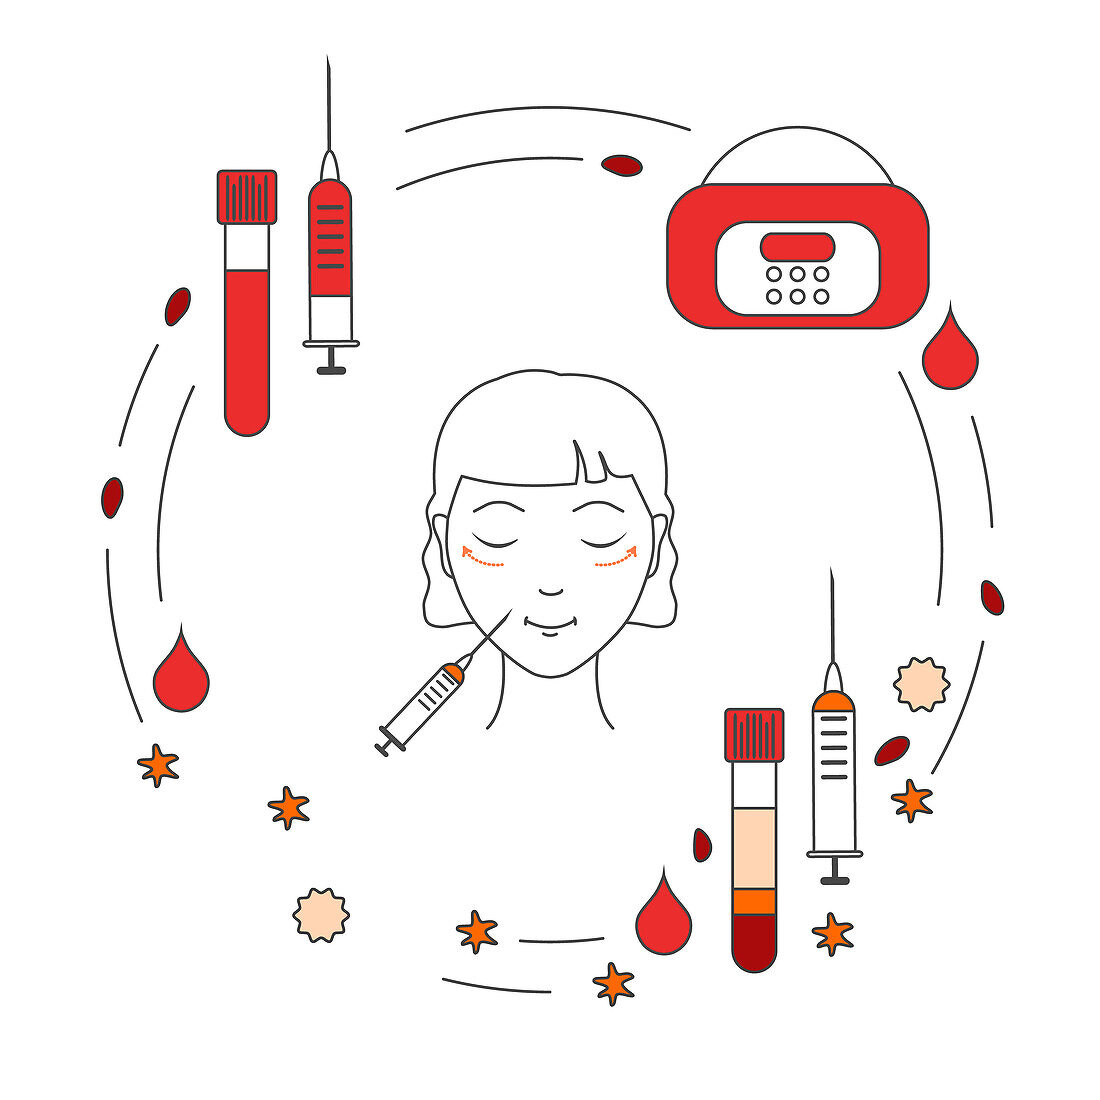 Platelet-rich plasma rejuvenation, conceptual illustration